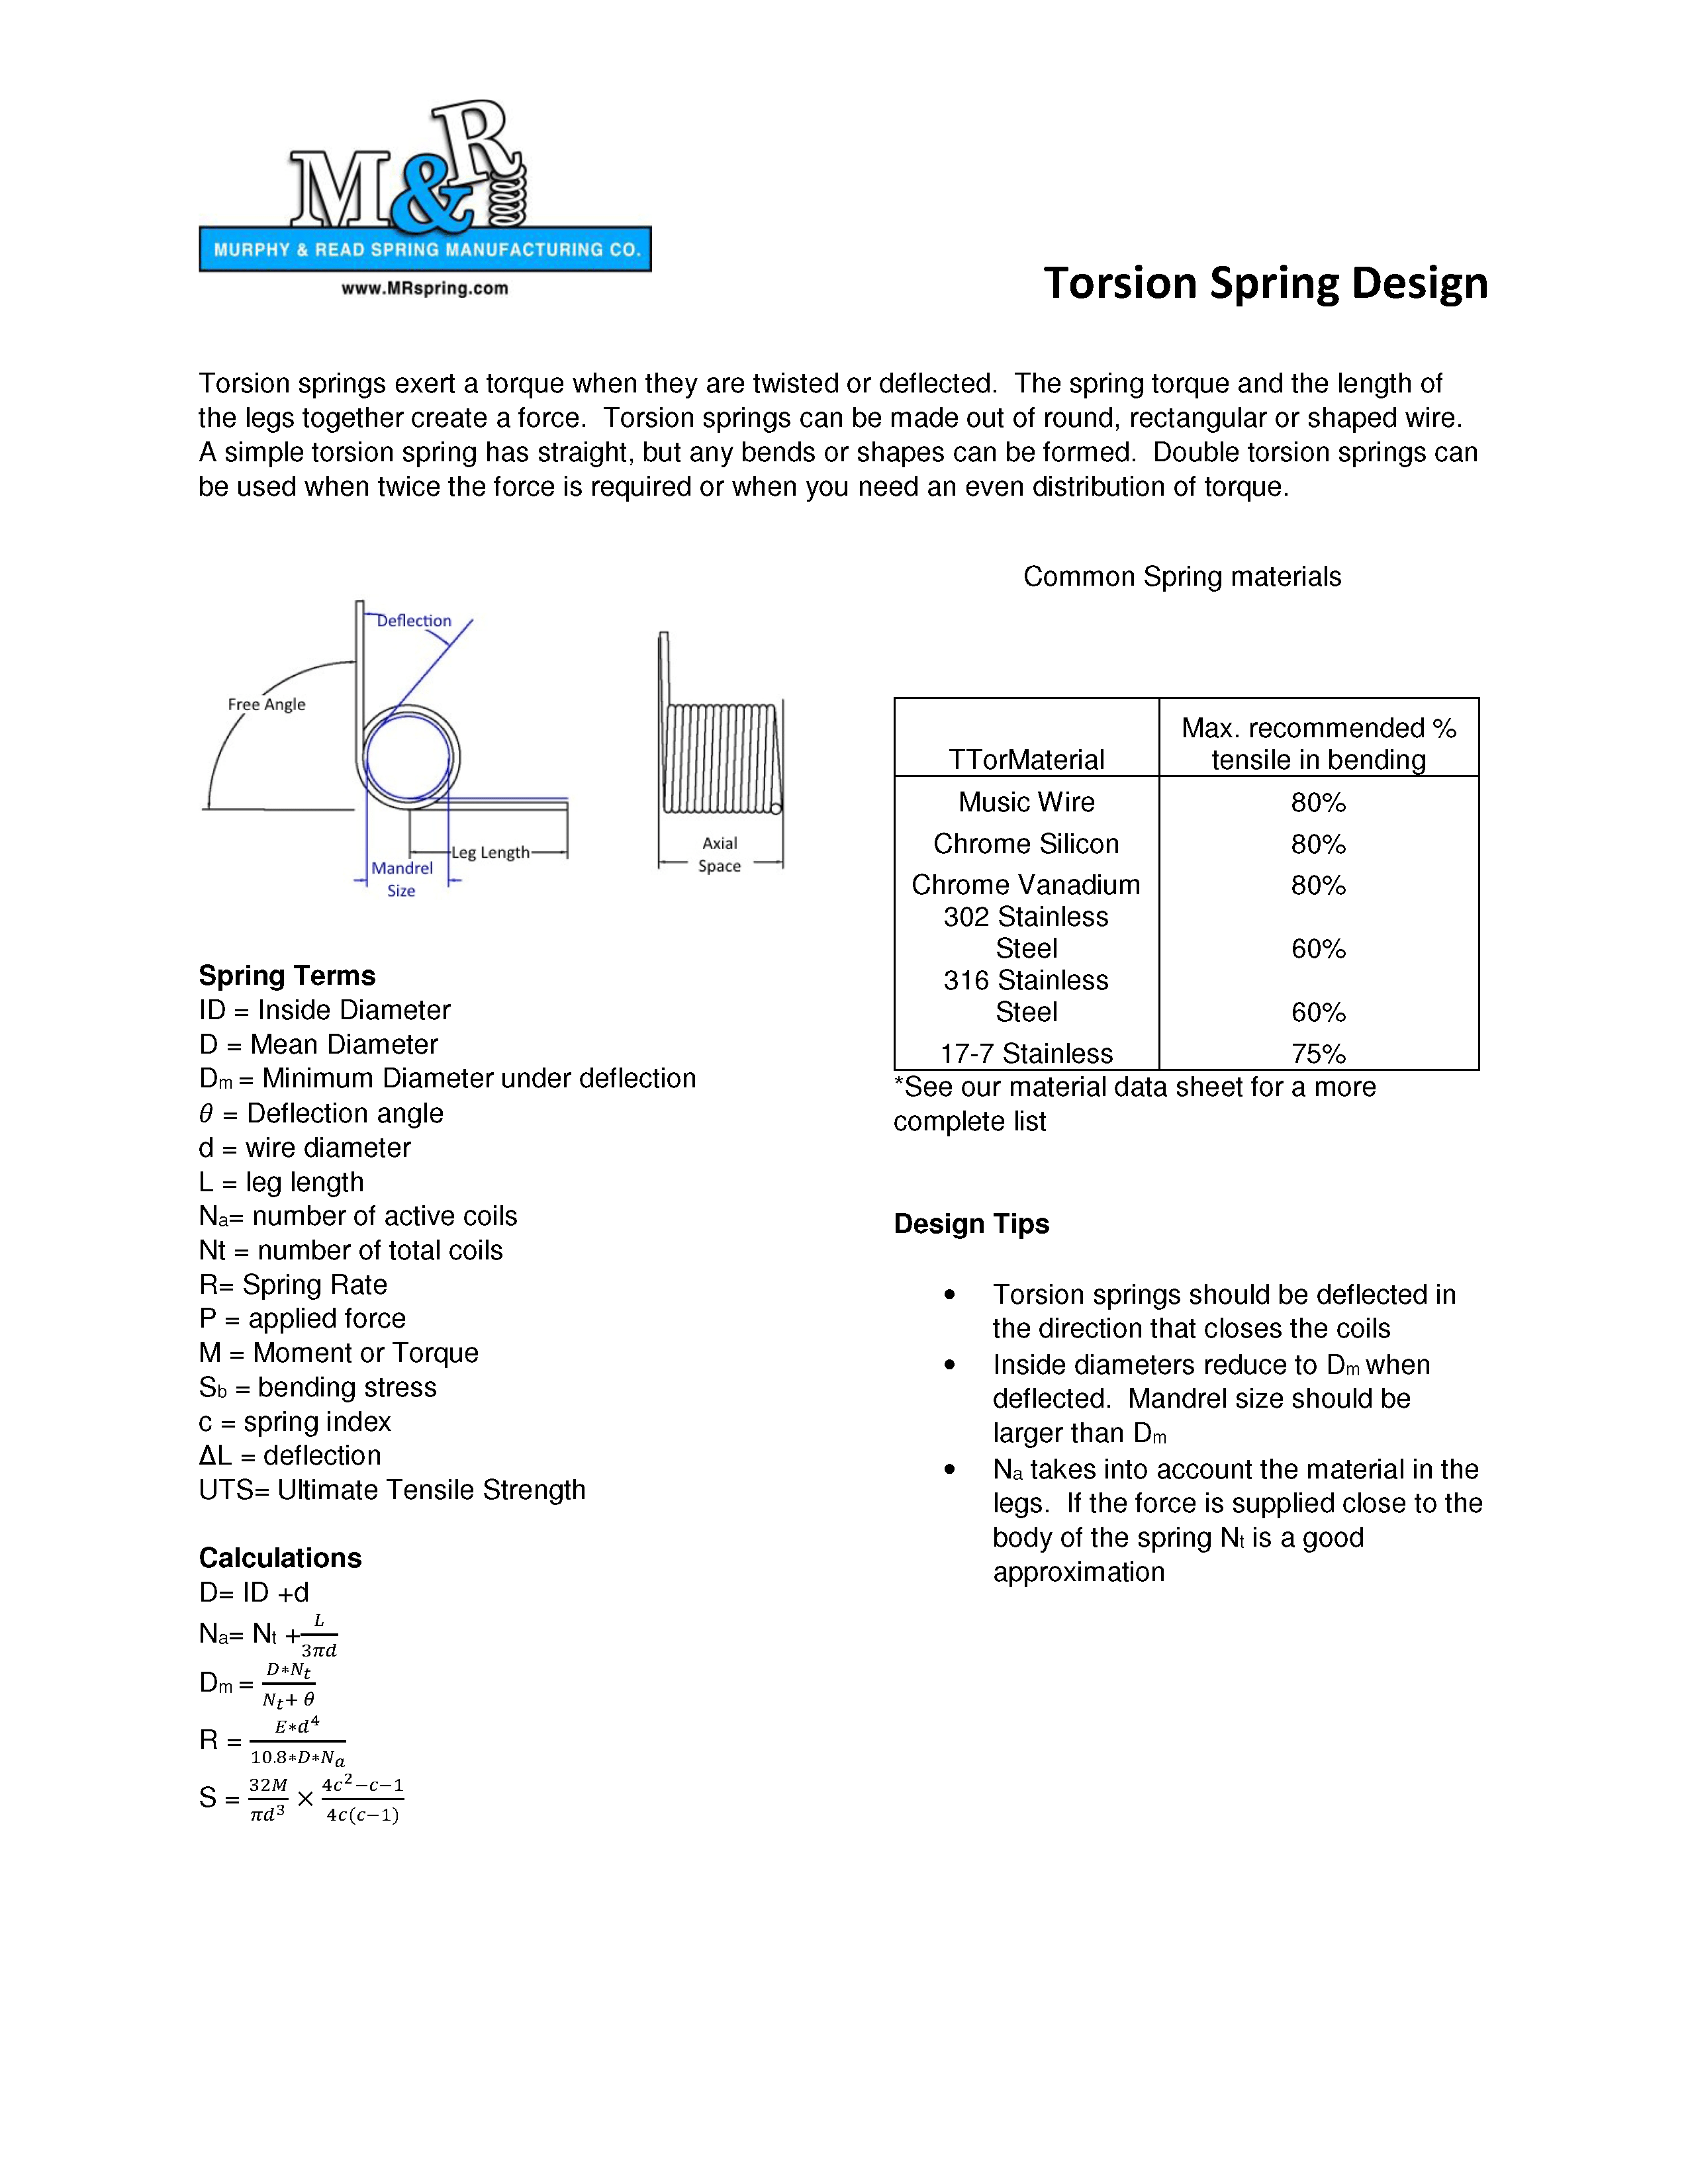 Torsion Spring Design Info_Page_1